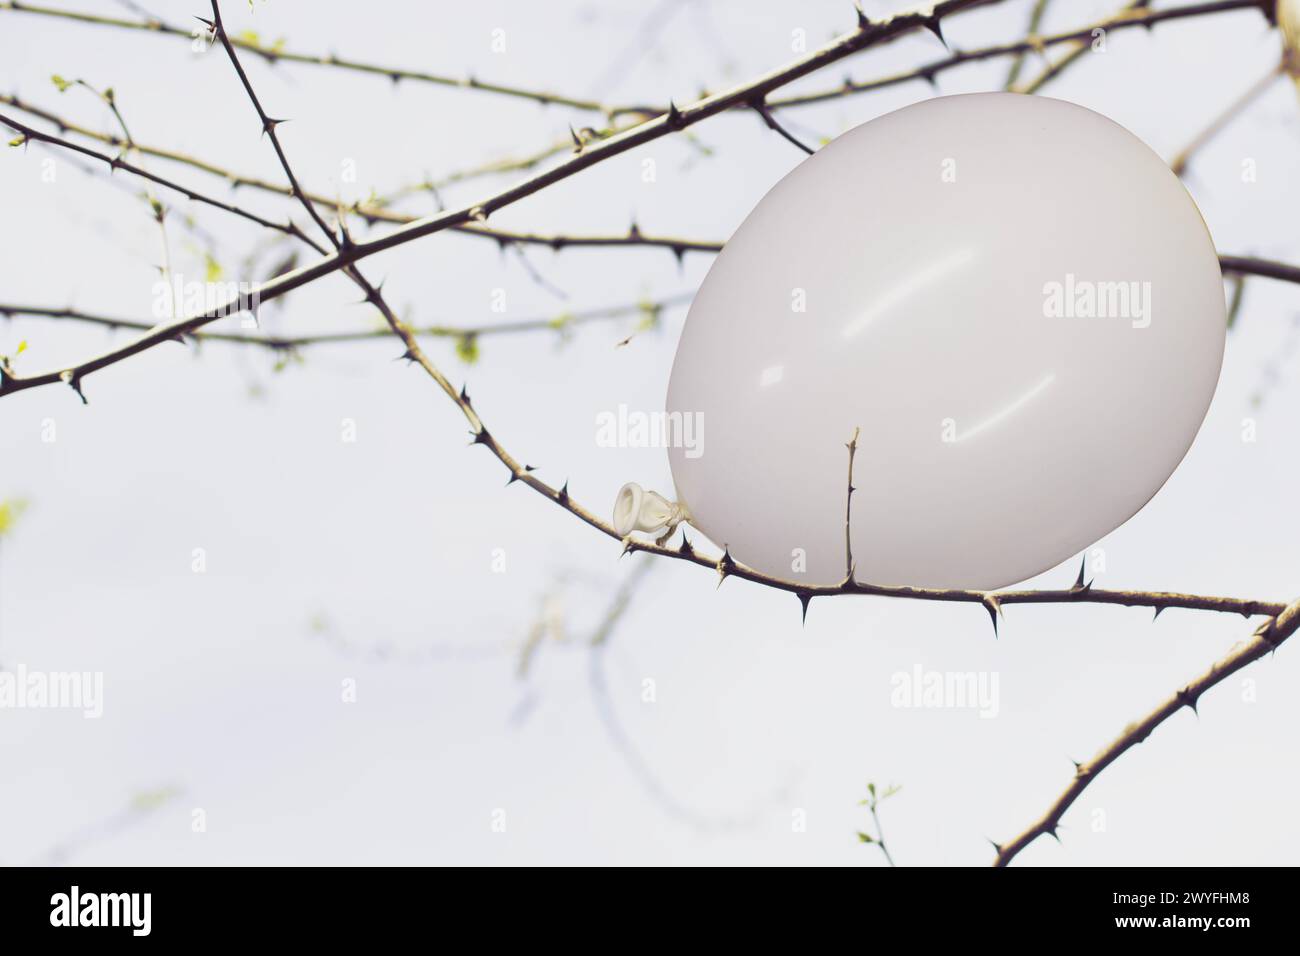 ballon blanc coincé dans les branches d'une plante épineuse, concept abstrait Banque D'Images